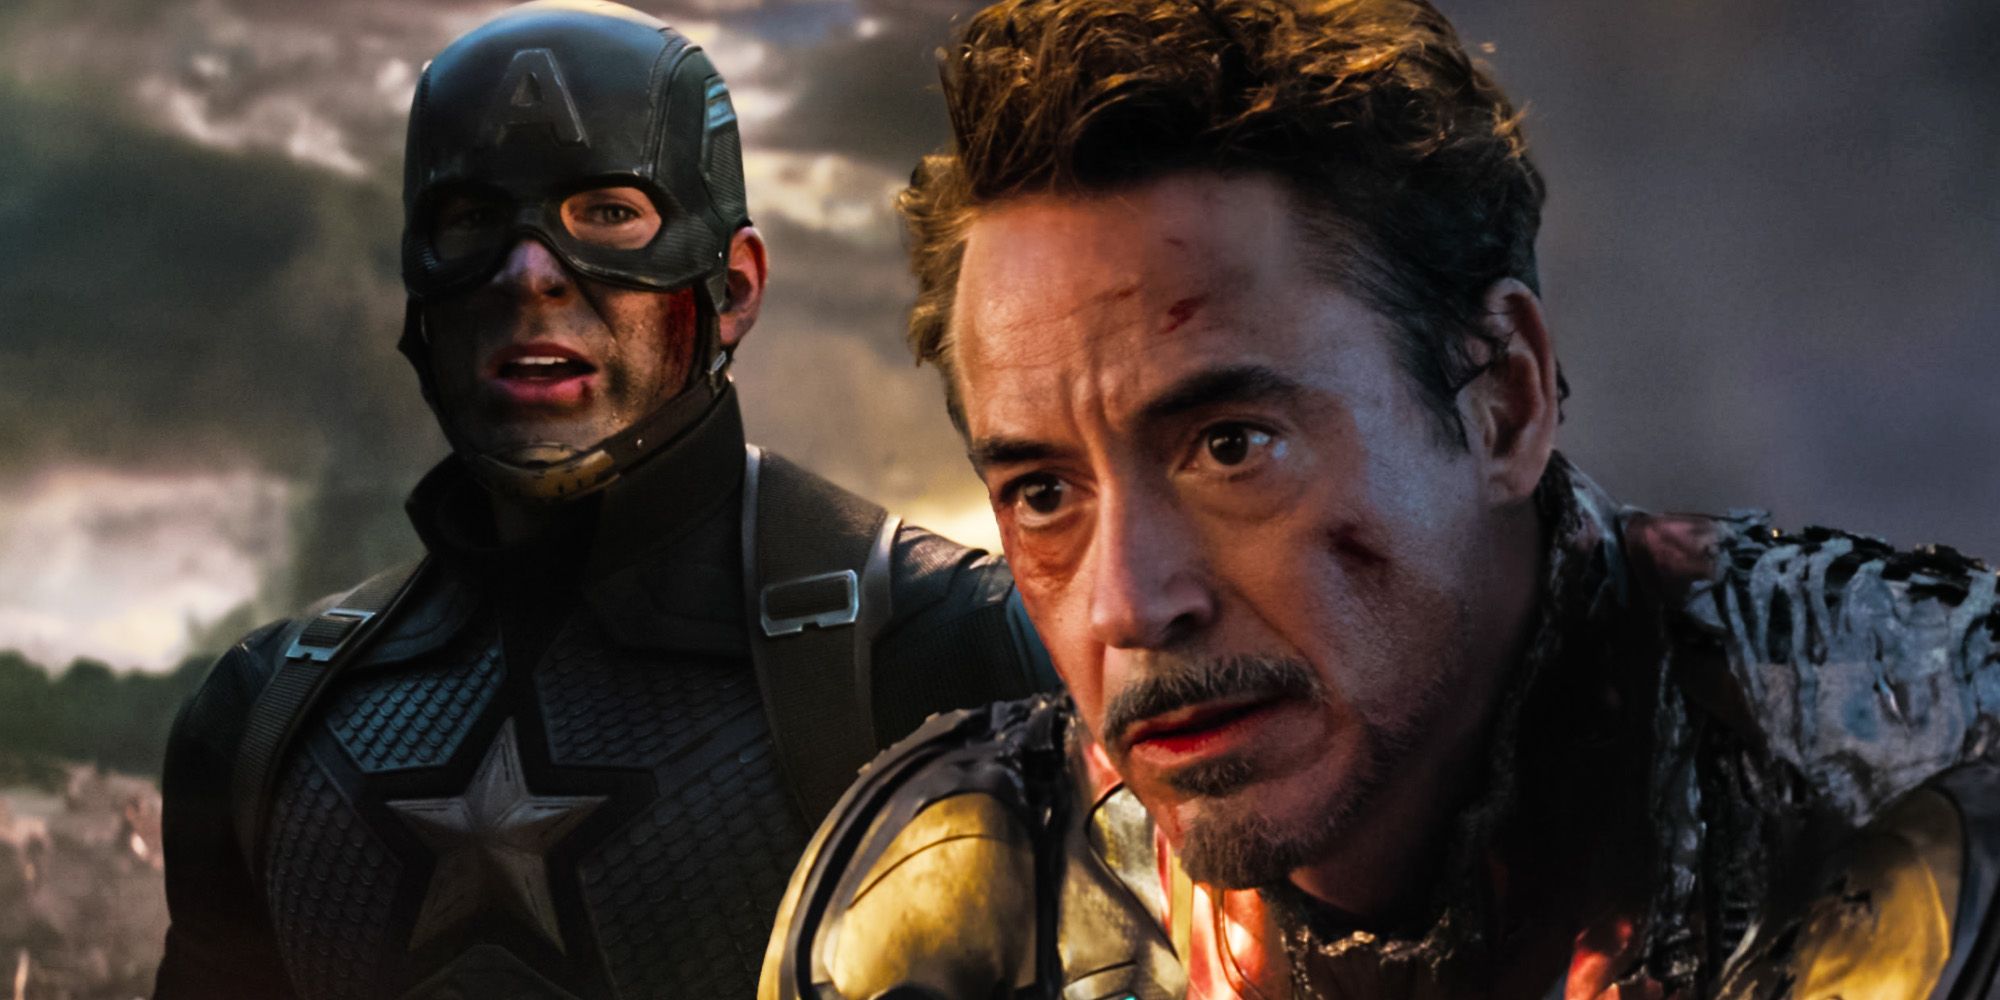 La fase 4 sería peor si el Capitán América muriera en Endgame y no en Iron Man